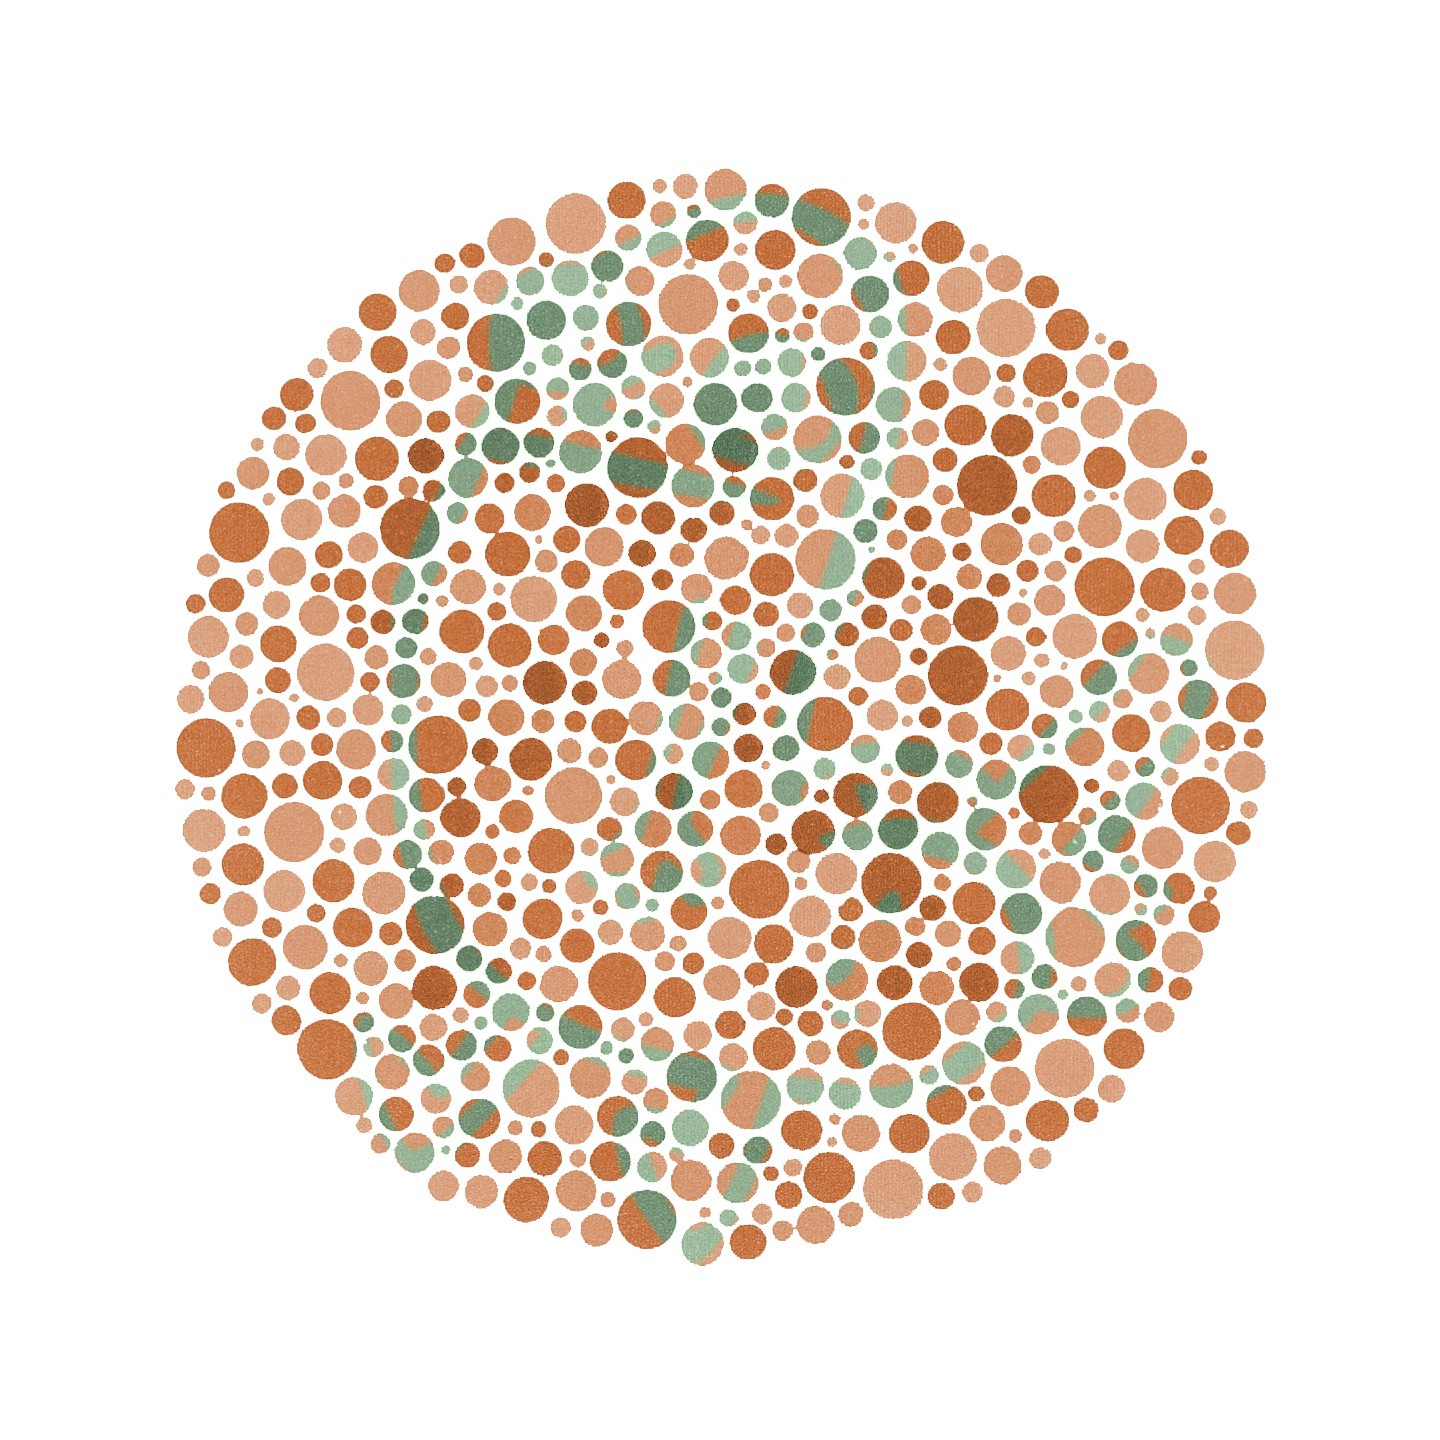 Color-blindness test